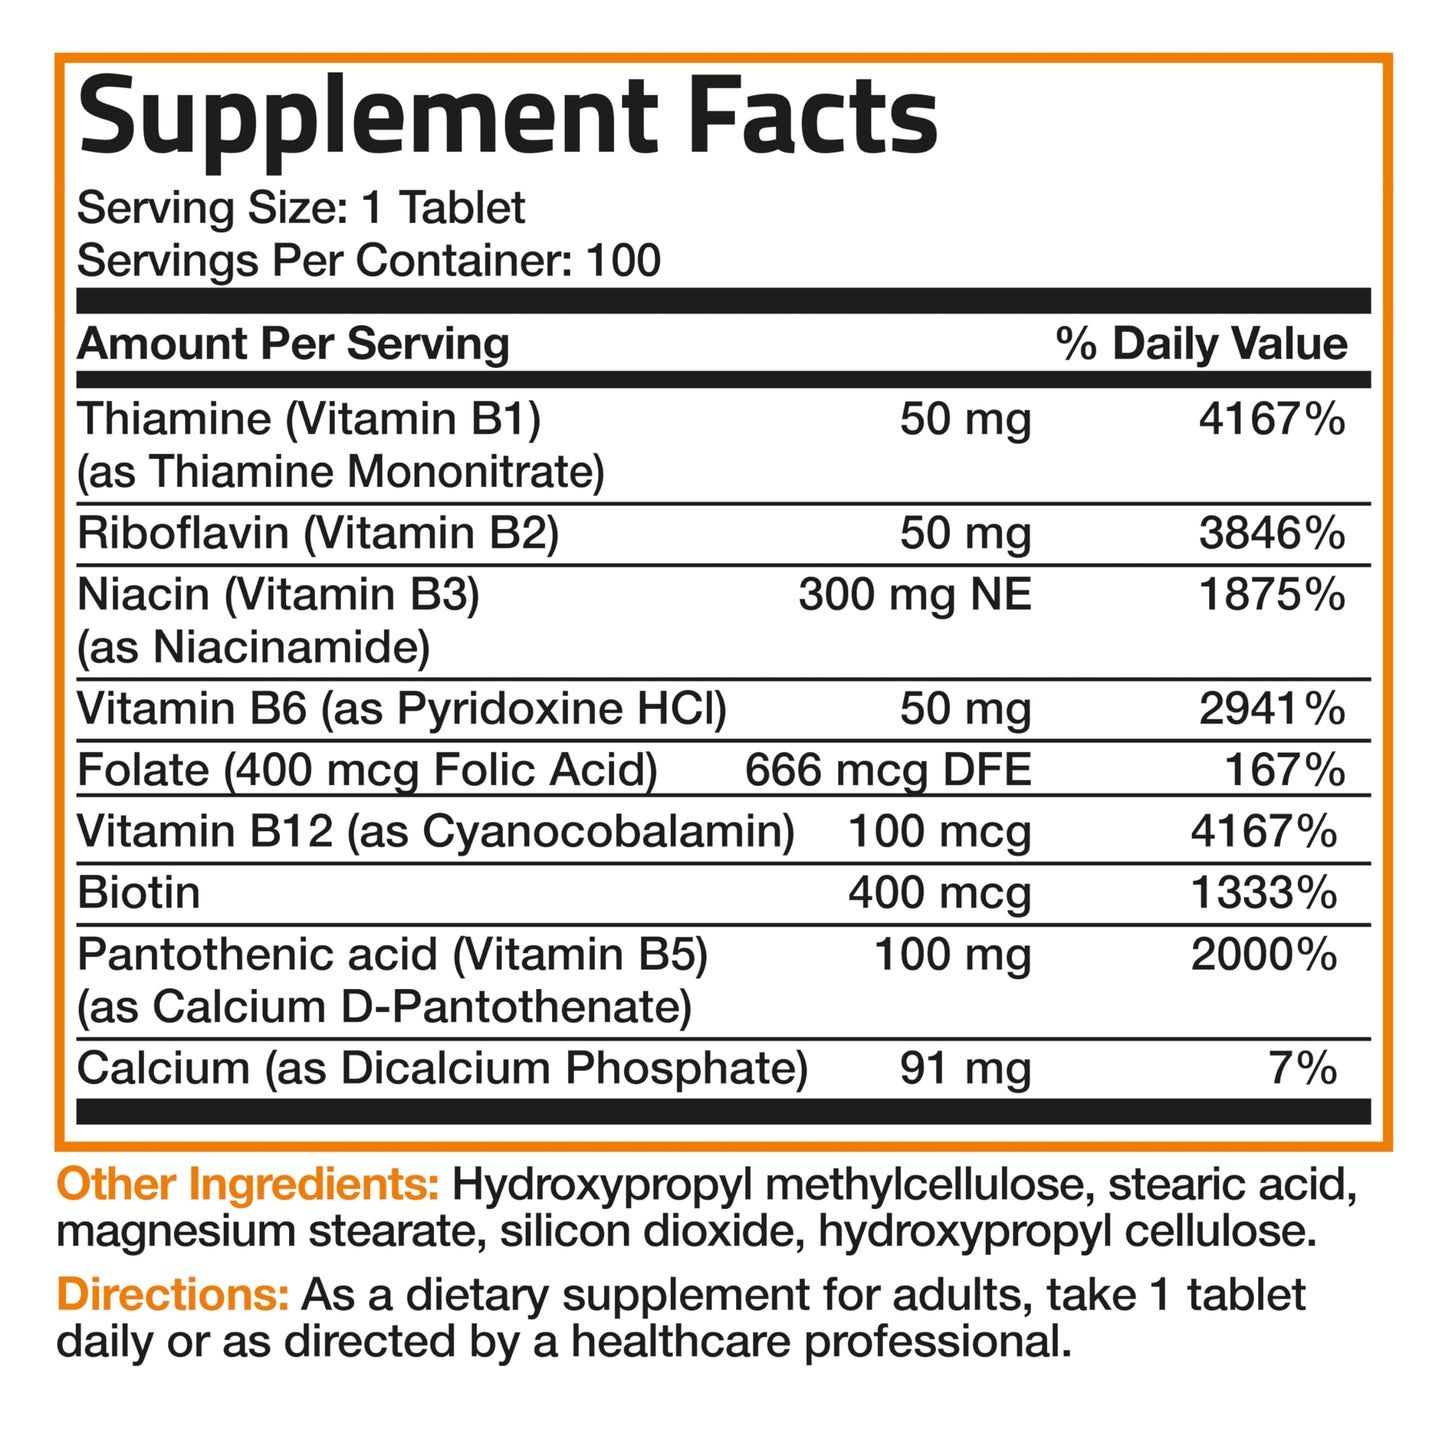 Bronson Super B Vitamin B Complex Sustained Slow Release (Vitamin B1, B2, B3, B6, B9 - Folic Acid, B12) Contains All B Vitamins 100 Tablets